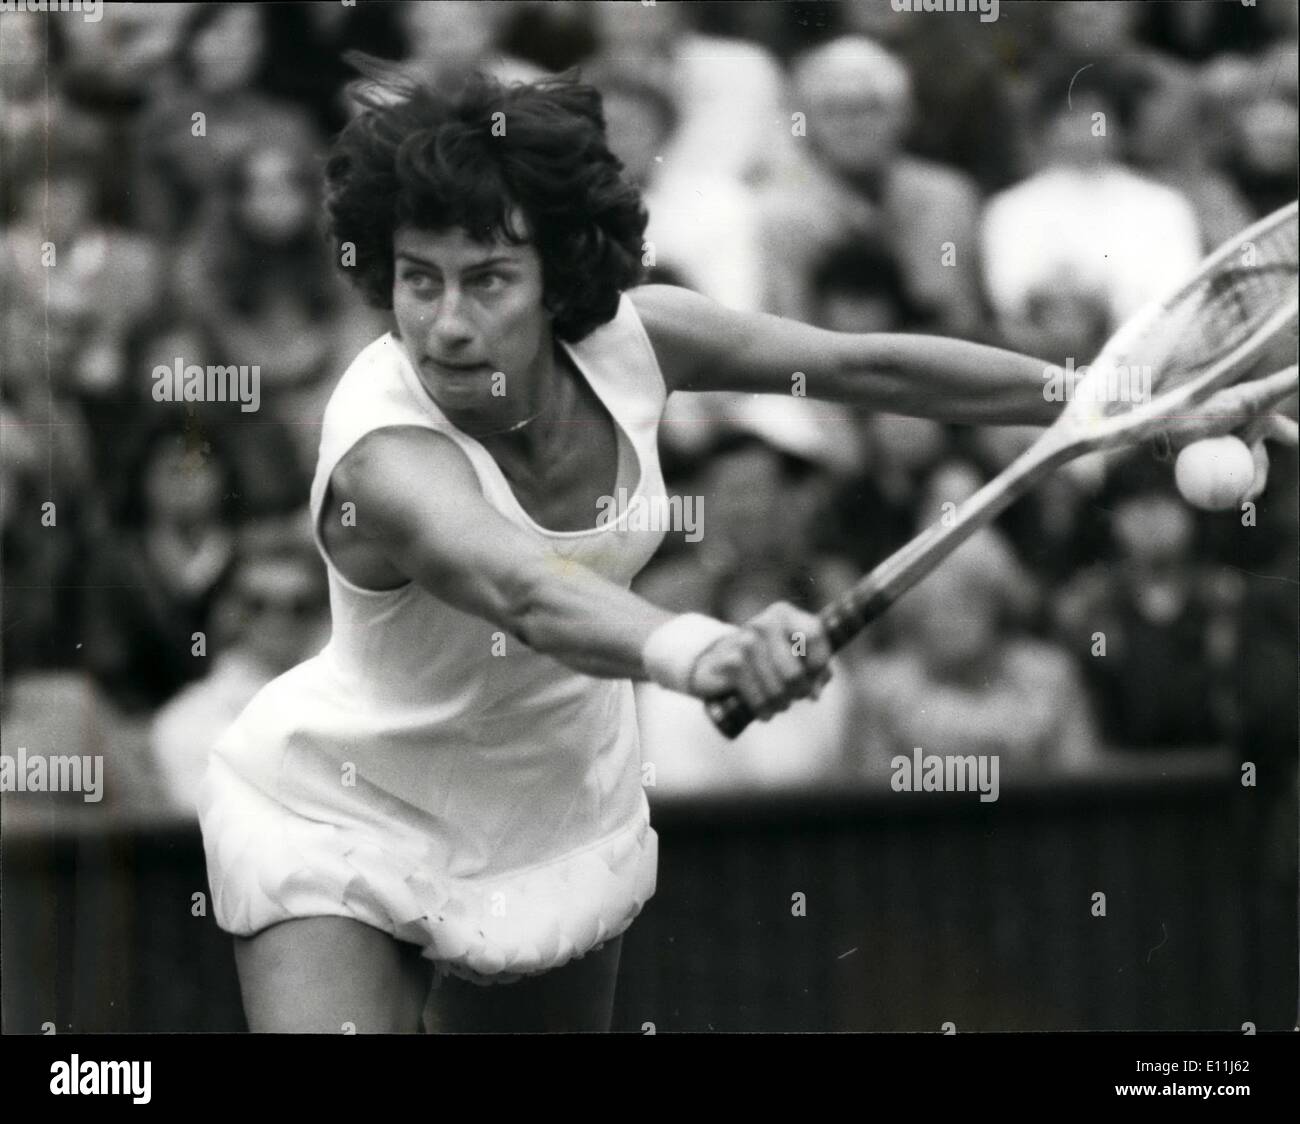 Lug. 07, 1978 - Chris Evert (US) battiti Virginia Wade (GB). La foto mostra il Virginia Wade (GB) visto in azione contro Chris Evert su Foto Stock